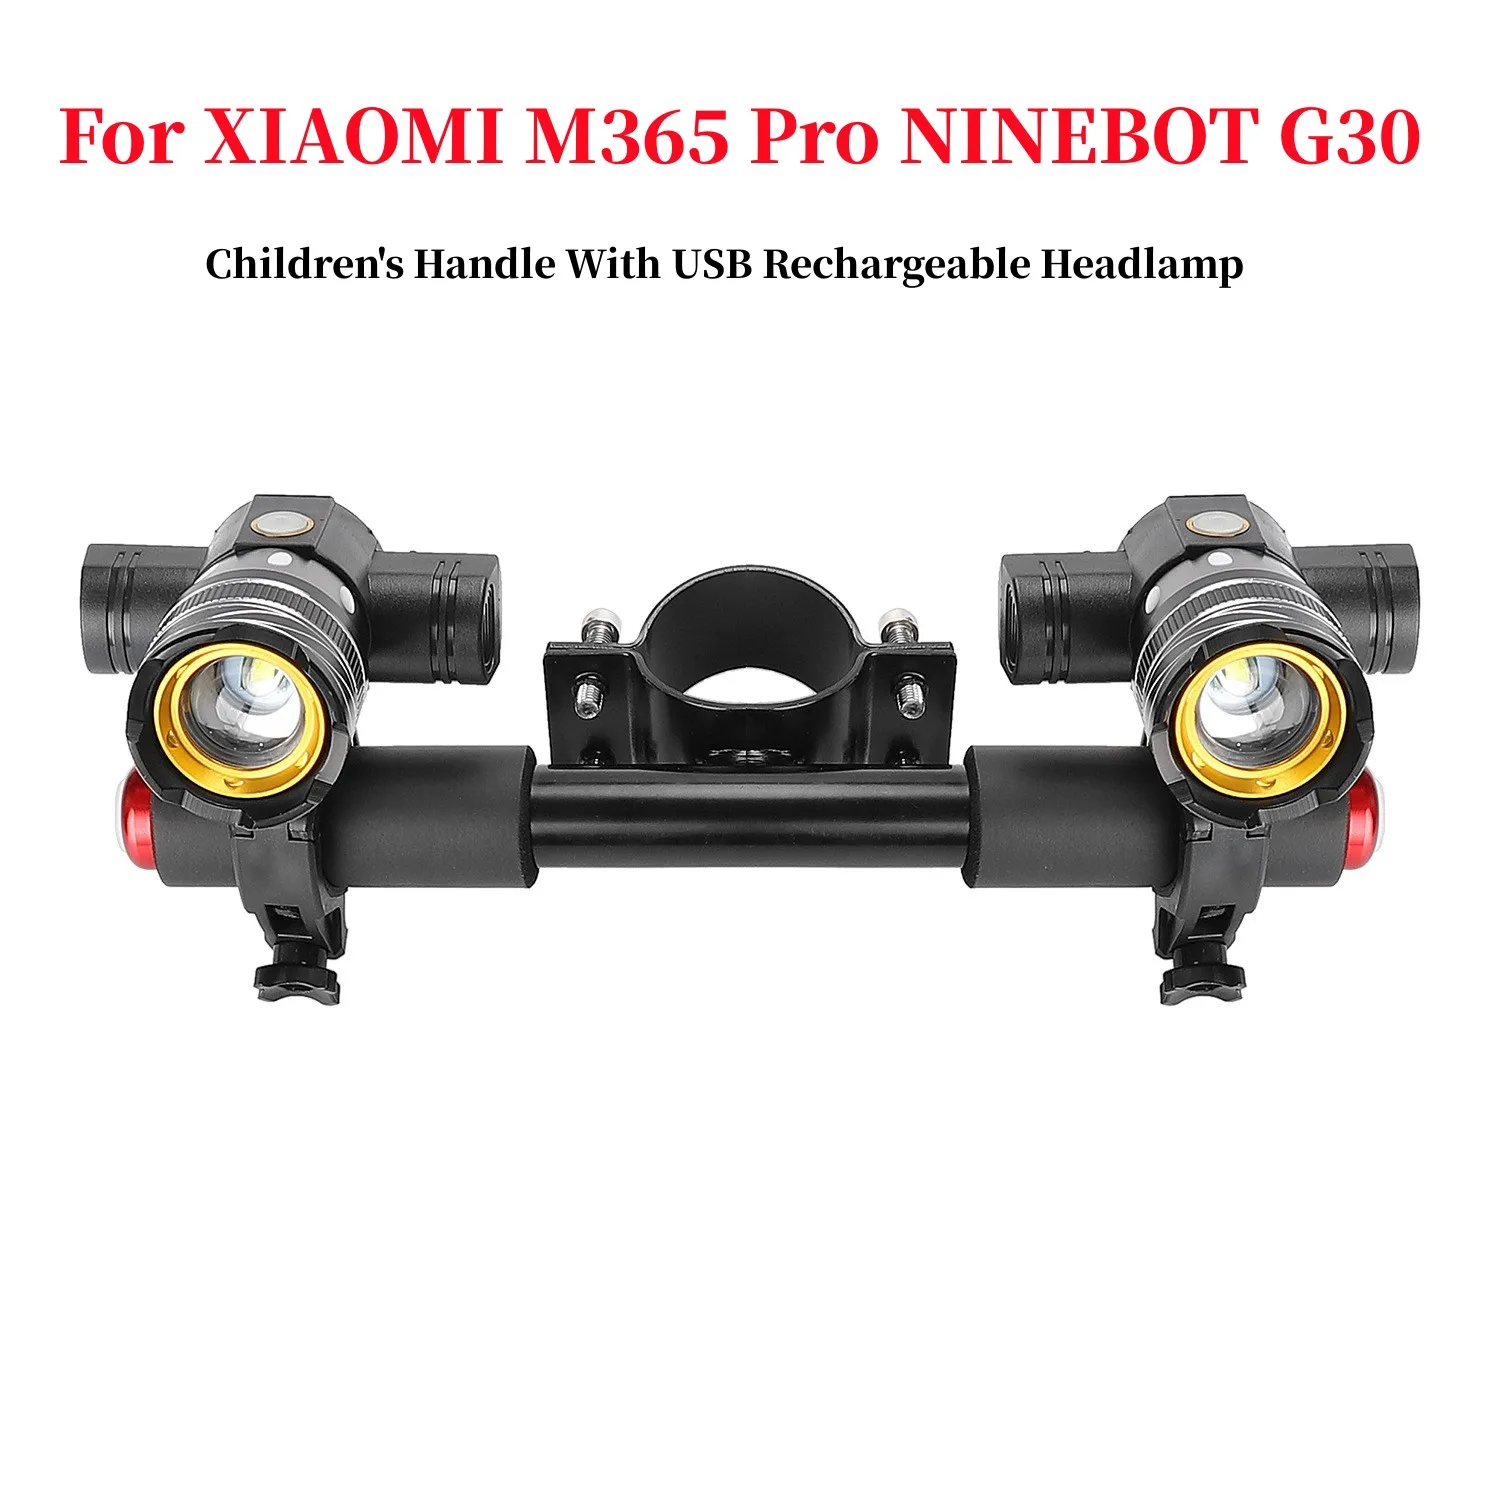 Детская Ручка С USB Перезаряжаемым Комплектом Налобных Фонарей для XIAOMI M365 Pro NINEBOT G30 ES2 Электрический Скутер Детский Подлокотник Запчасти